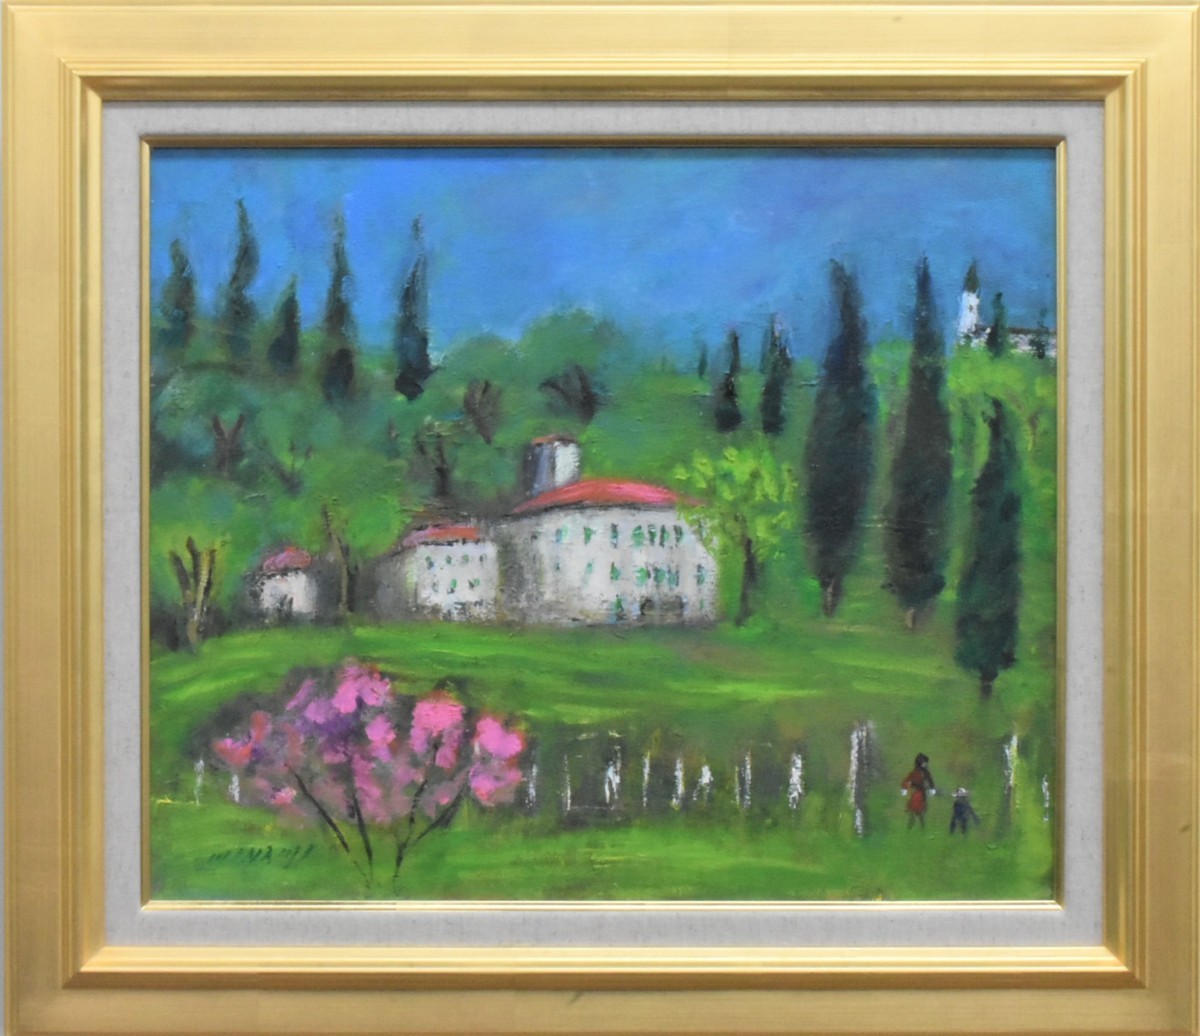 Empfehlenswerte Ölgemälde zu finden! Mieko Minami 8F Frühling in der Toskana (Italien) Masamitsu Gallery, Malerei, Ölgemälde, Natur, Landschaftsmalerei